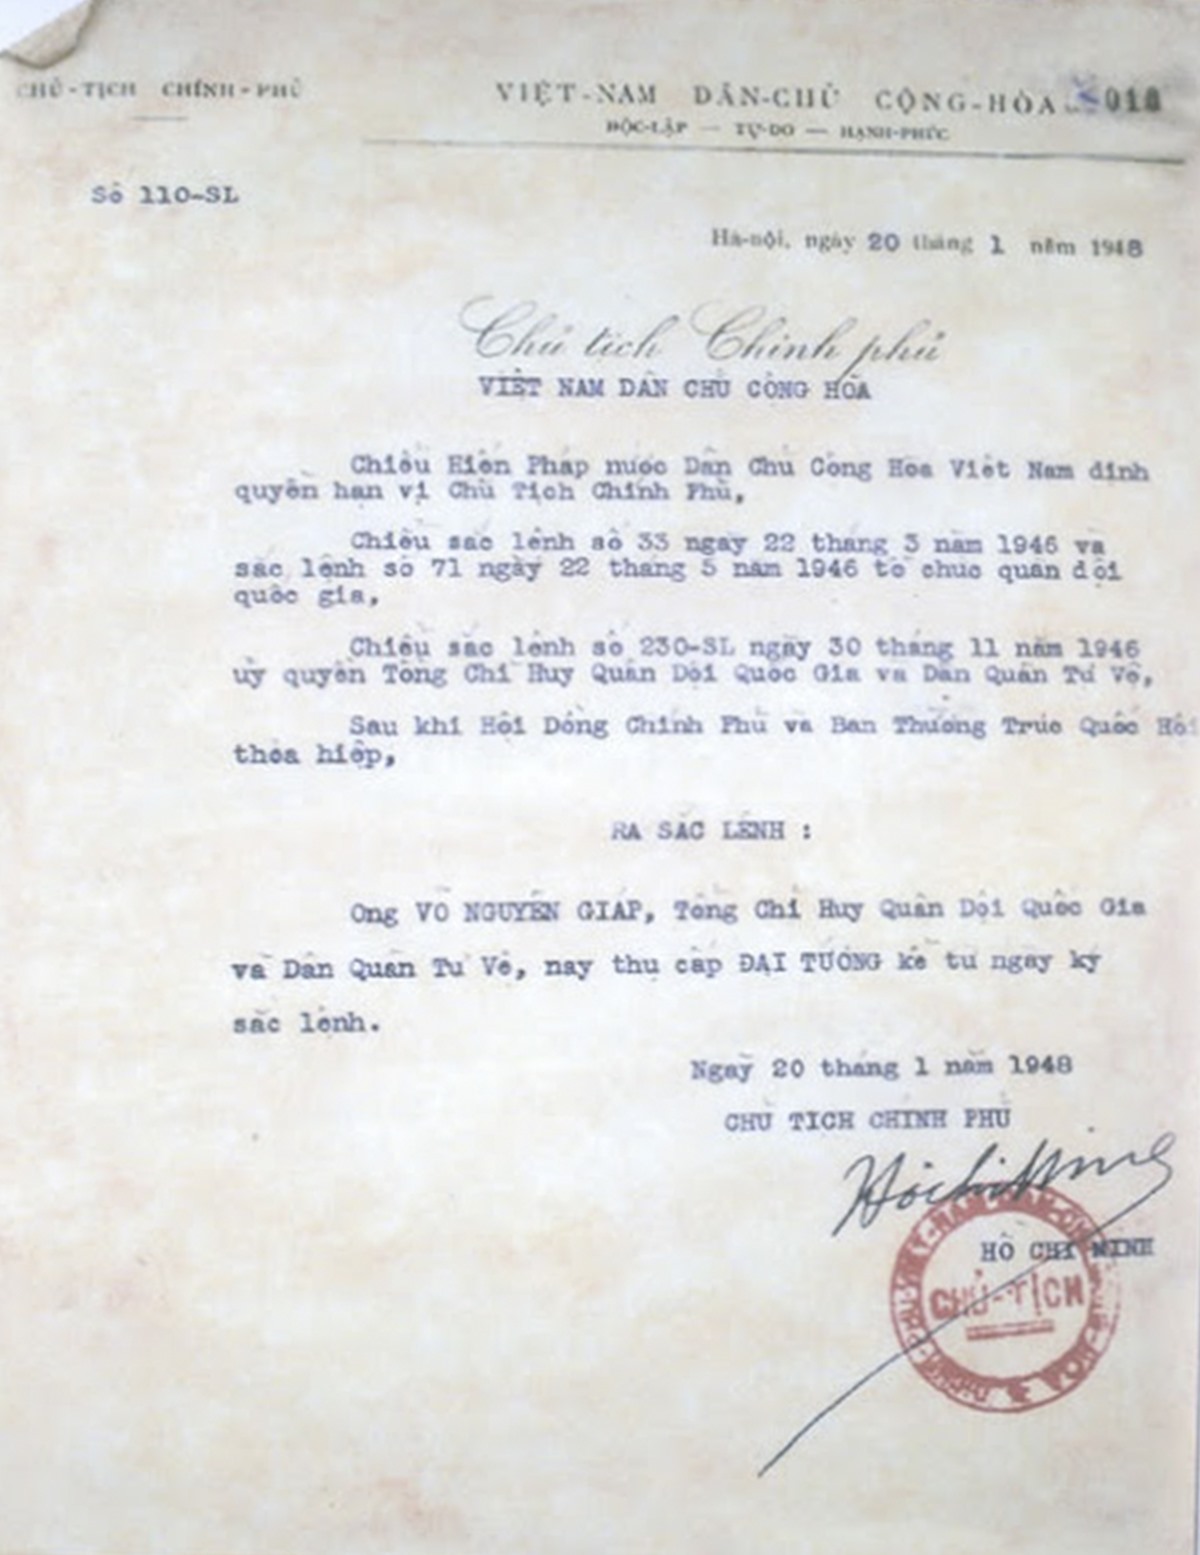 Sắc lệnh phong quân hàm Đại tướng năm 1948